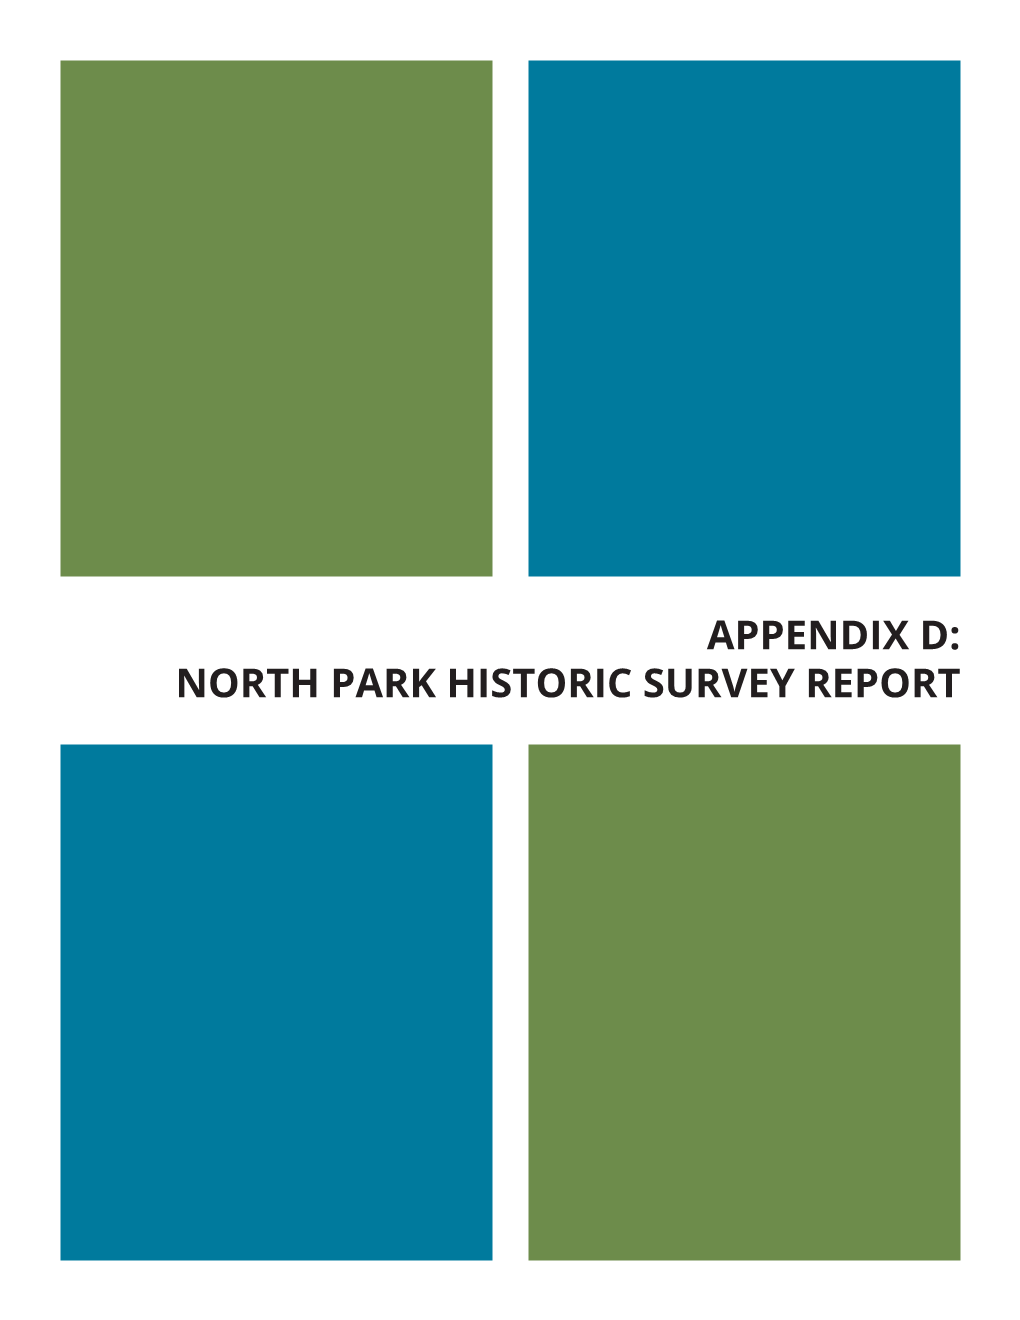 North Park Historic Survey Report North Park Community Plan D Appendix D